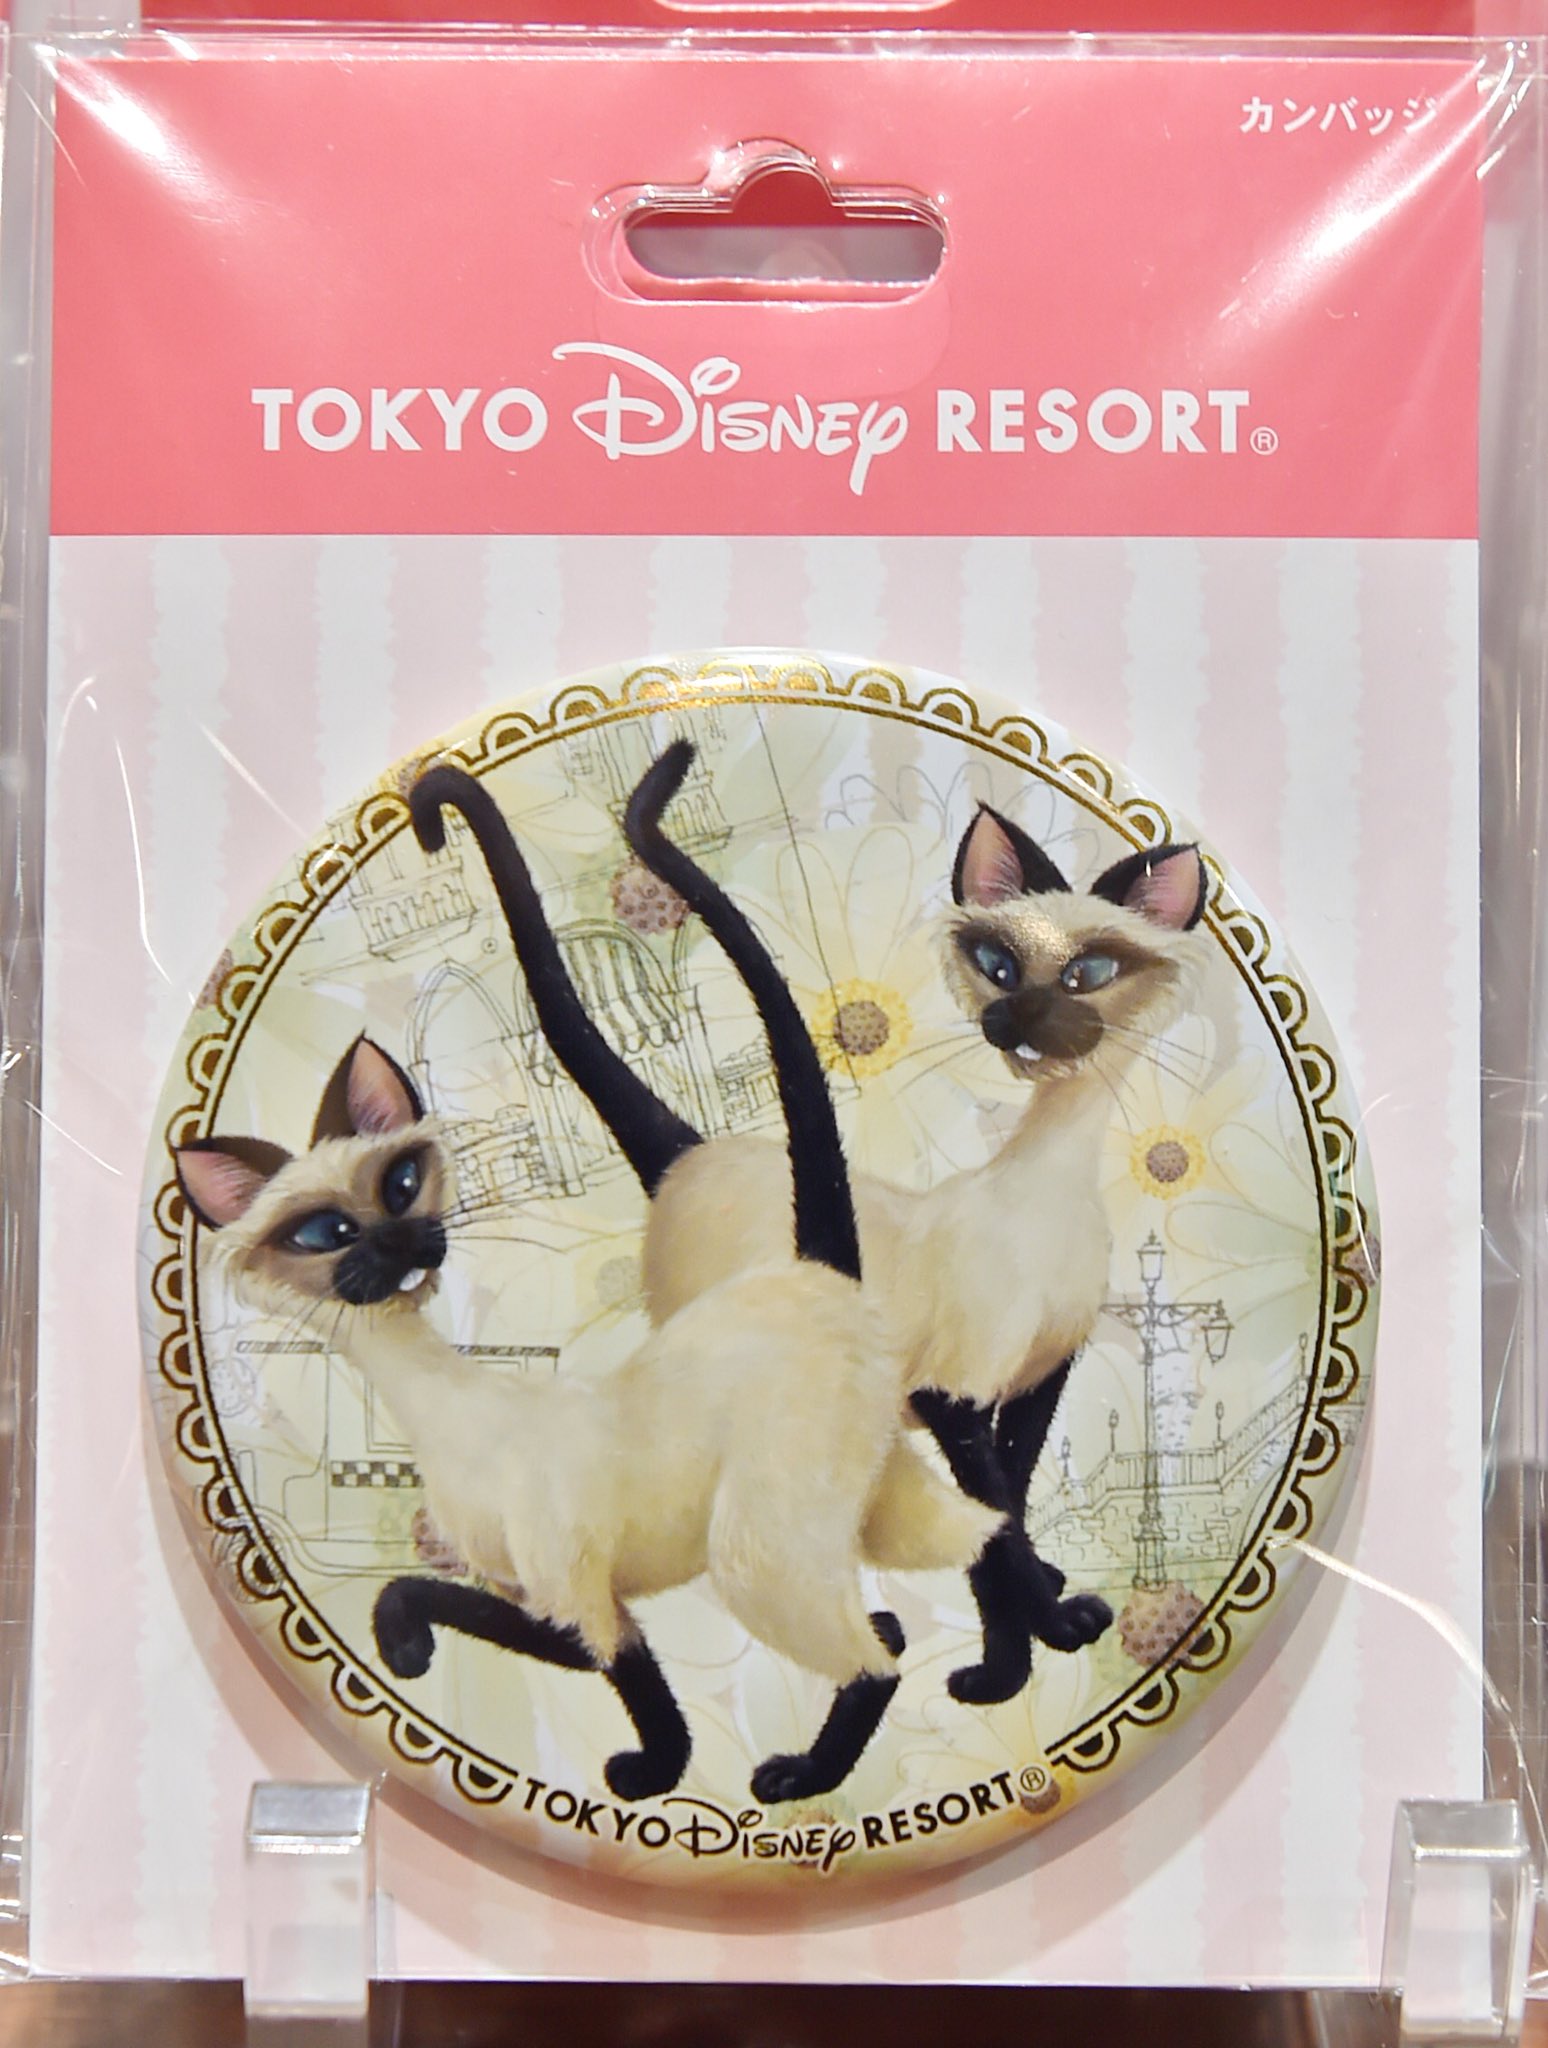 Mezzomikiのディズニーブログ 東京ディズニーランド 猫キャラクターグッズ マリーたちの缶バッジ5種類が本日新発売 シンデレラのルシファーとわんわん物語のサイとアムも 価格各310円です T Co Kwpf5dvdsn T Co Tq0qghvwt2 Twitter